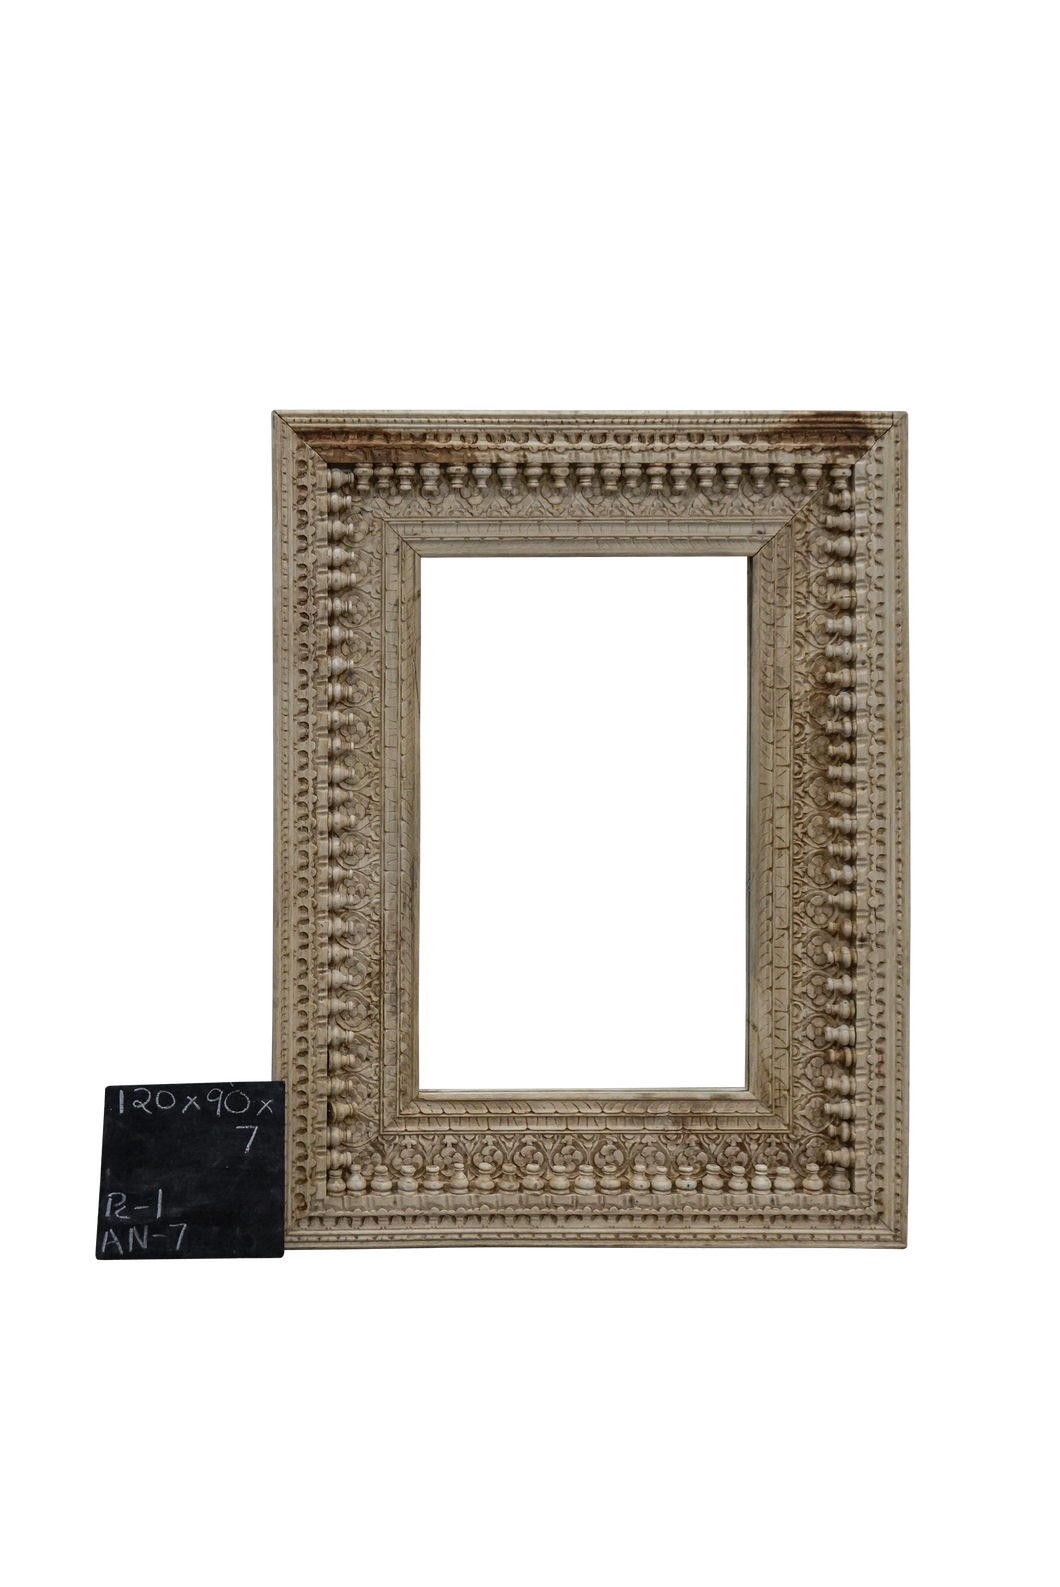 Wooden mirror frame